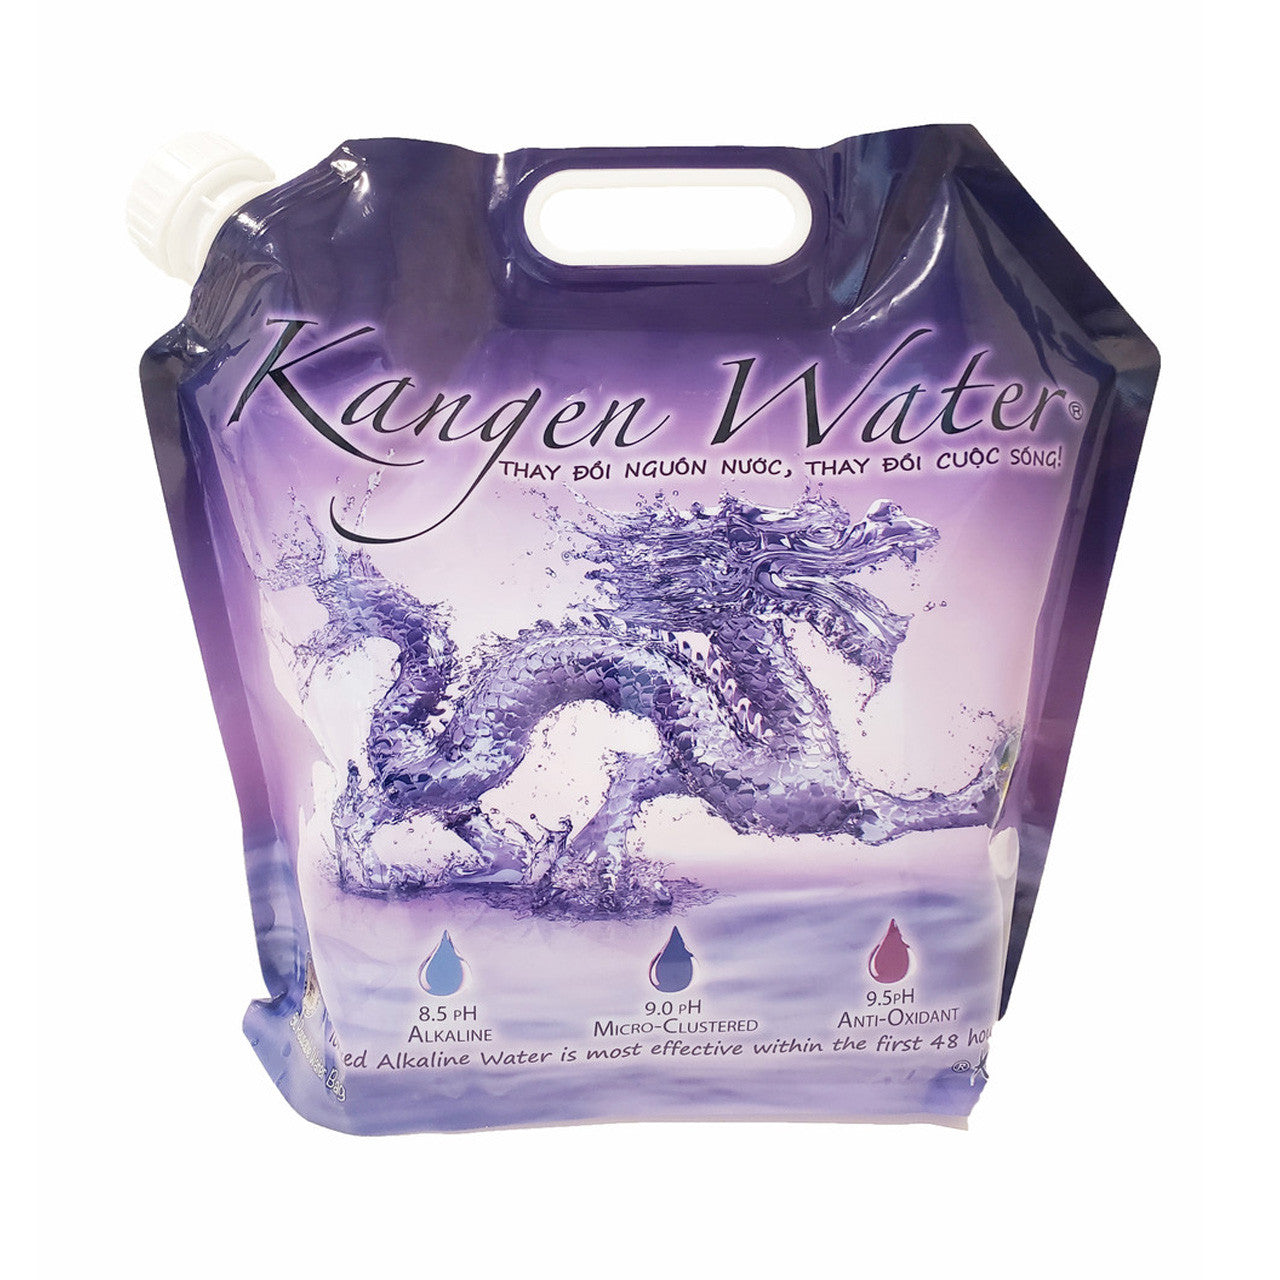 5 Liter Dragon Water Bag